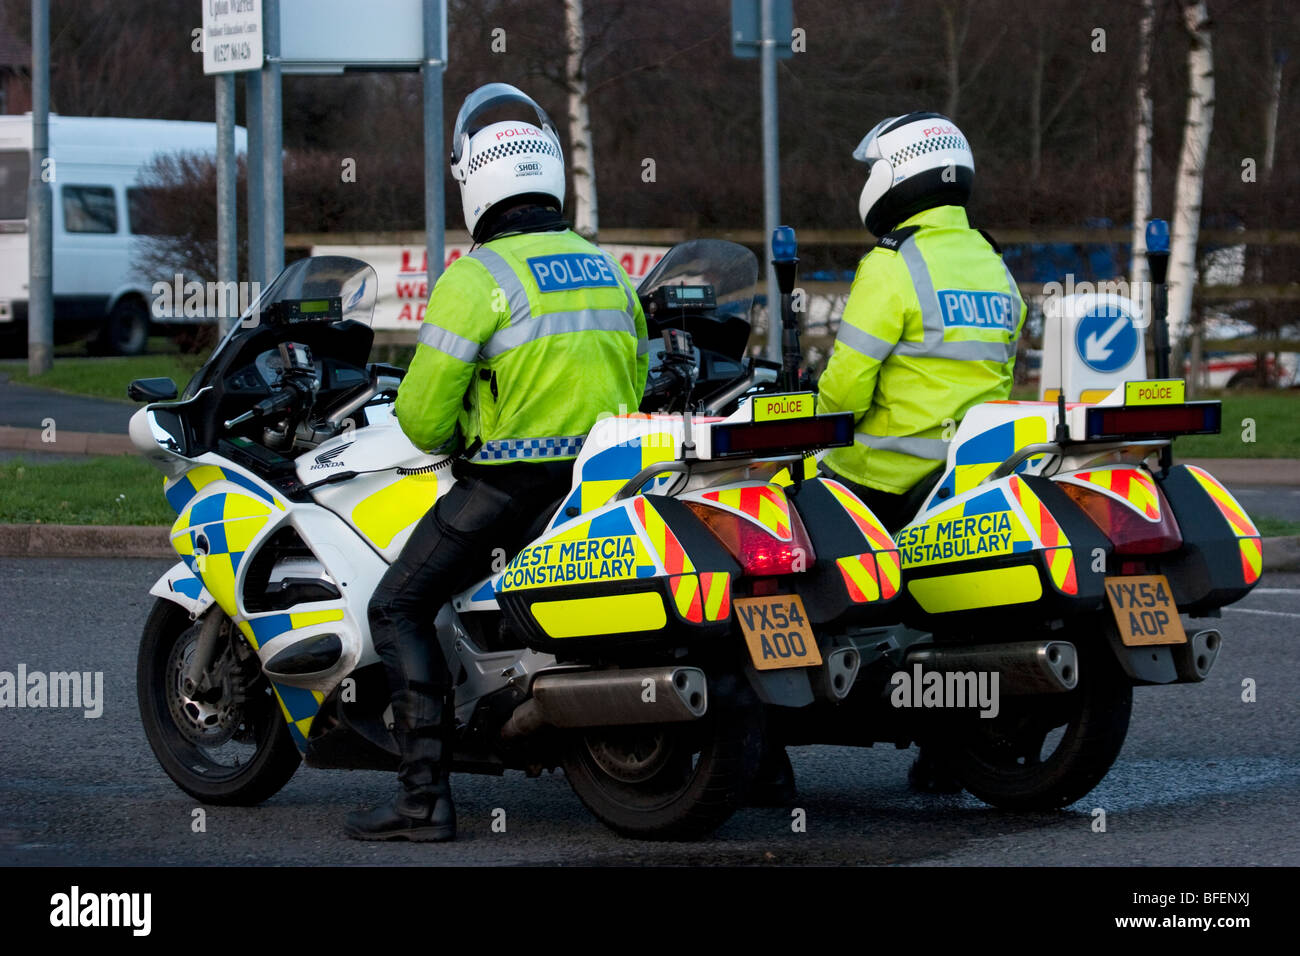 Polizei-Motorräder geparkt in Parkstreifen, England UK Stockfoto